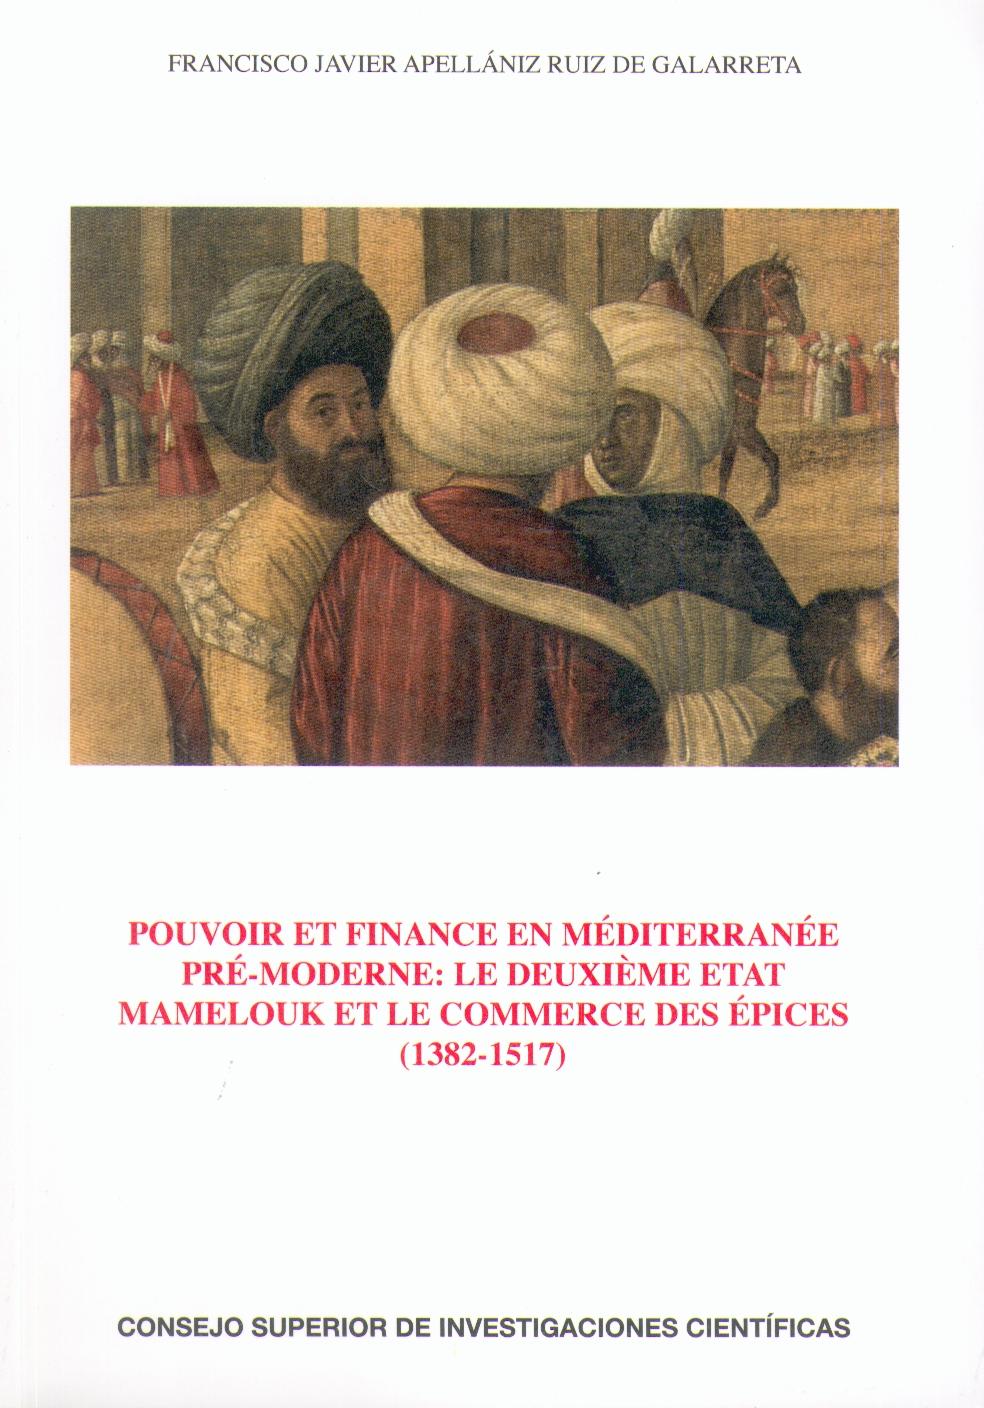 Pouvoir Et Finance en Mediterranee Pre-Moderne "Mamelouk Et le Commerce Des Epices 1382-1517"